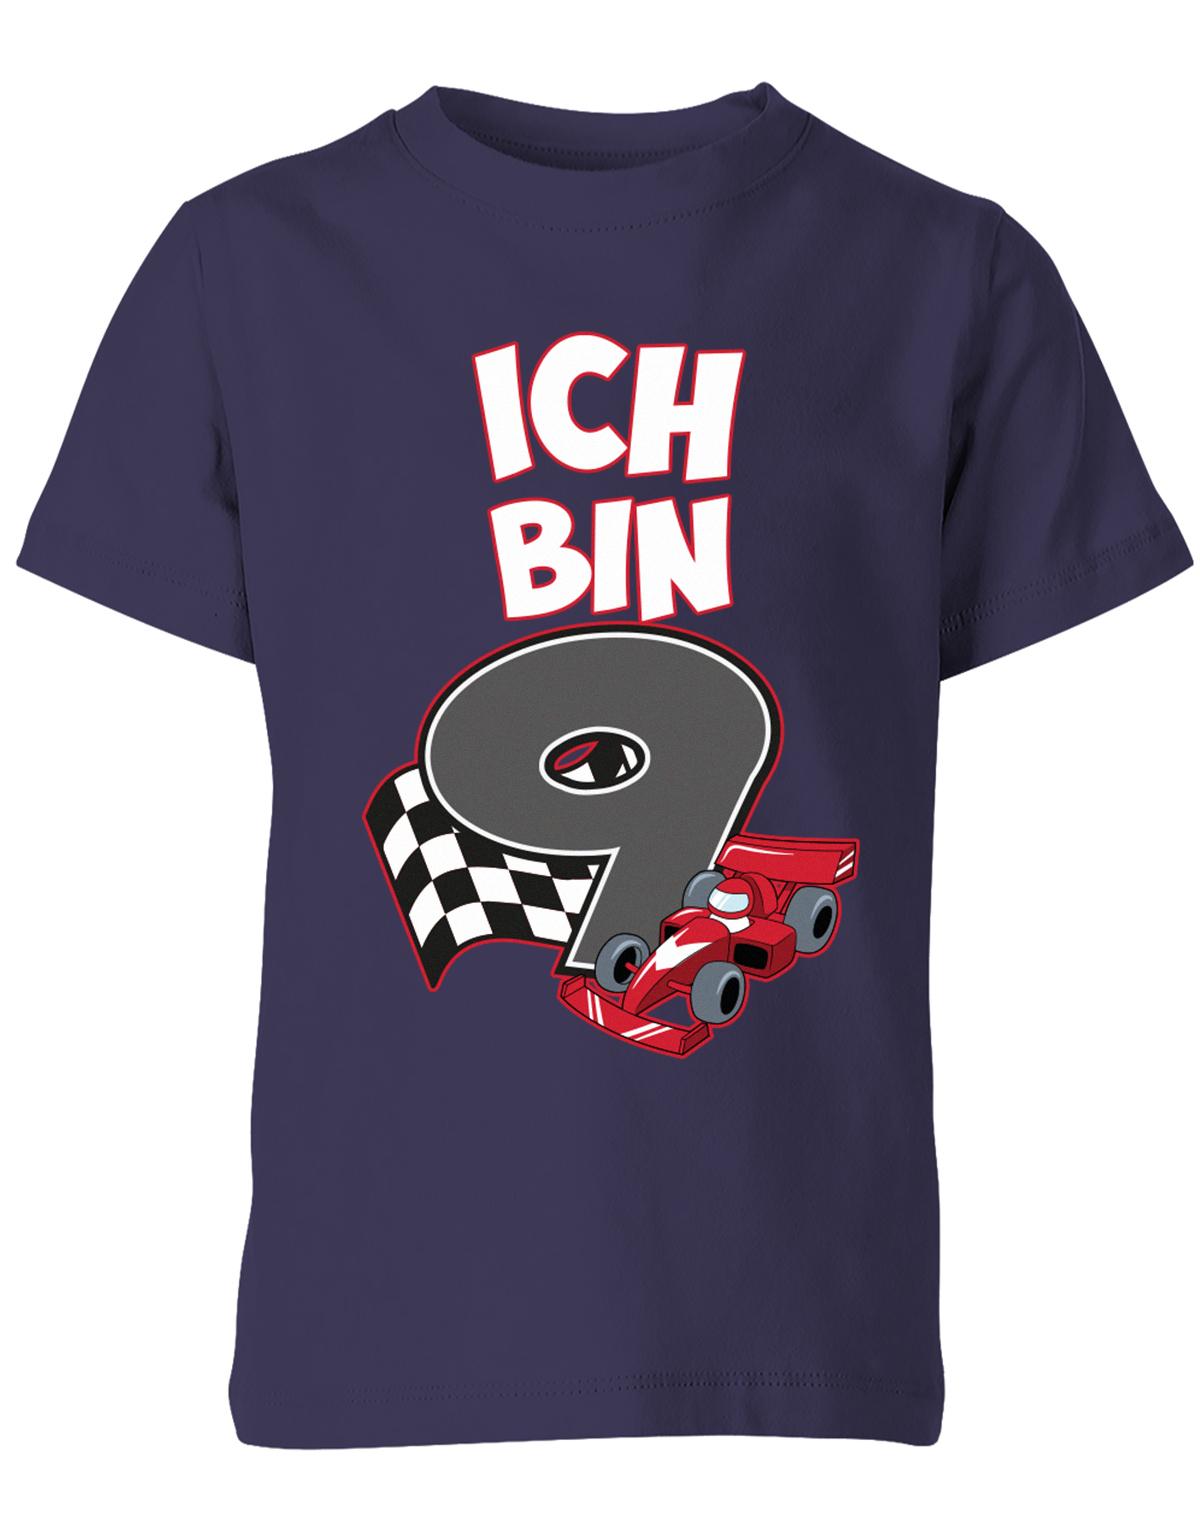 ich-bin-9-autorennen-rennwagen-geburtstag-rennfahrer-kinder-shirt-navy